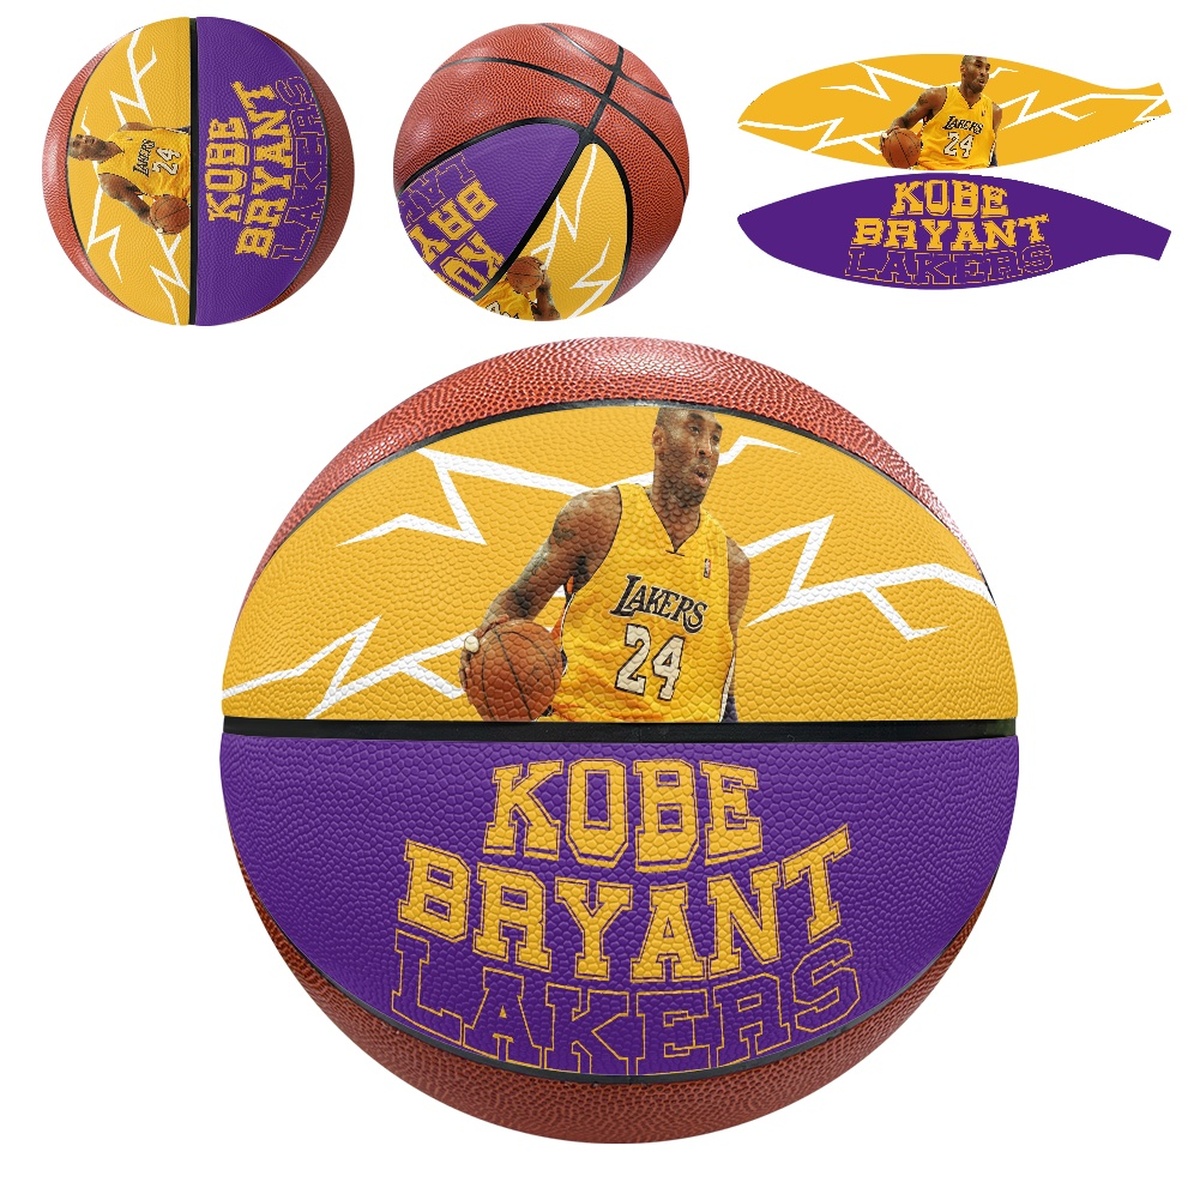 Kobe Bryant Basketball Ball 001(Pls check description for details)